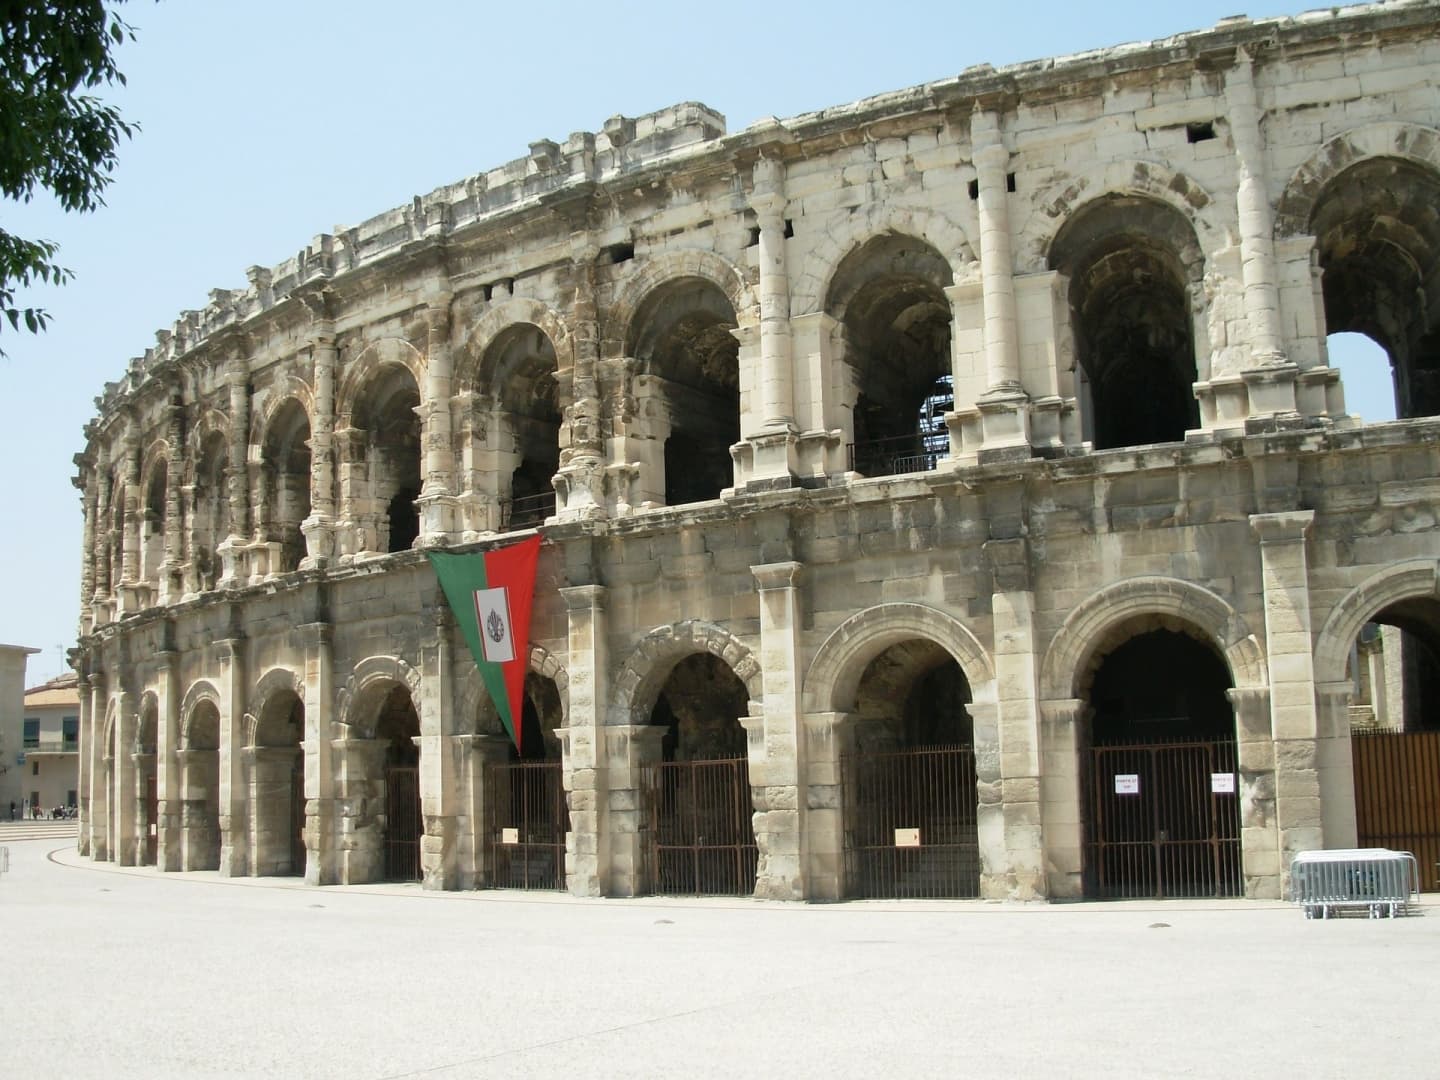 Amfiteatrul roman din Nîmes